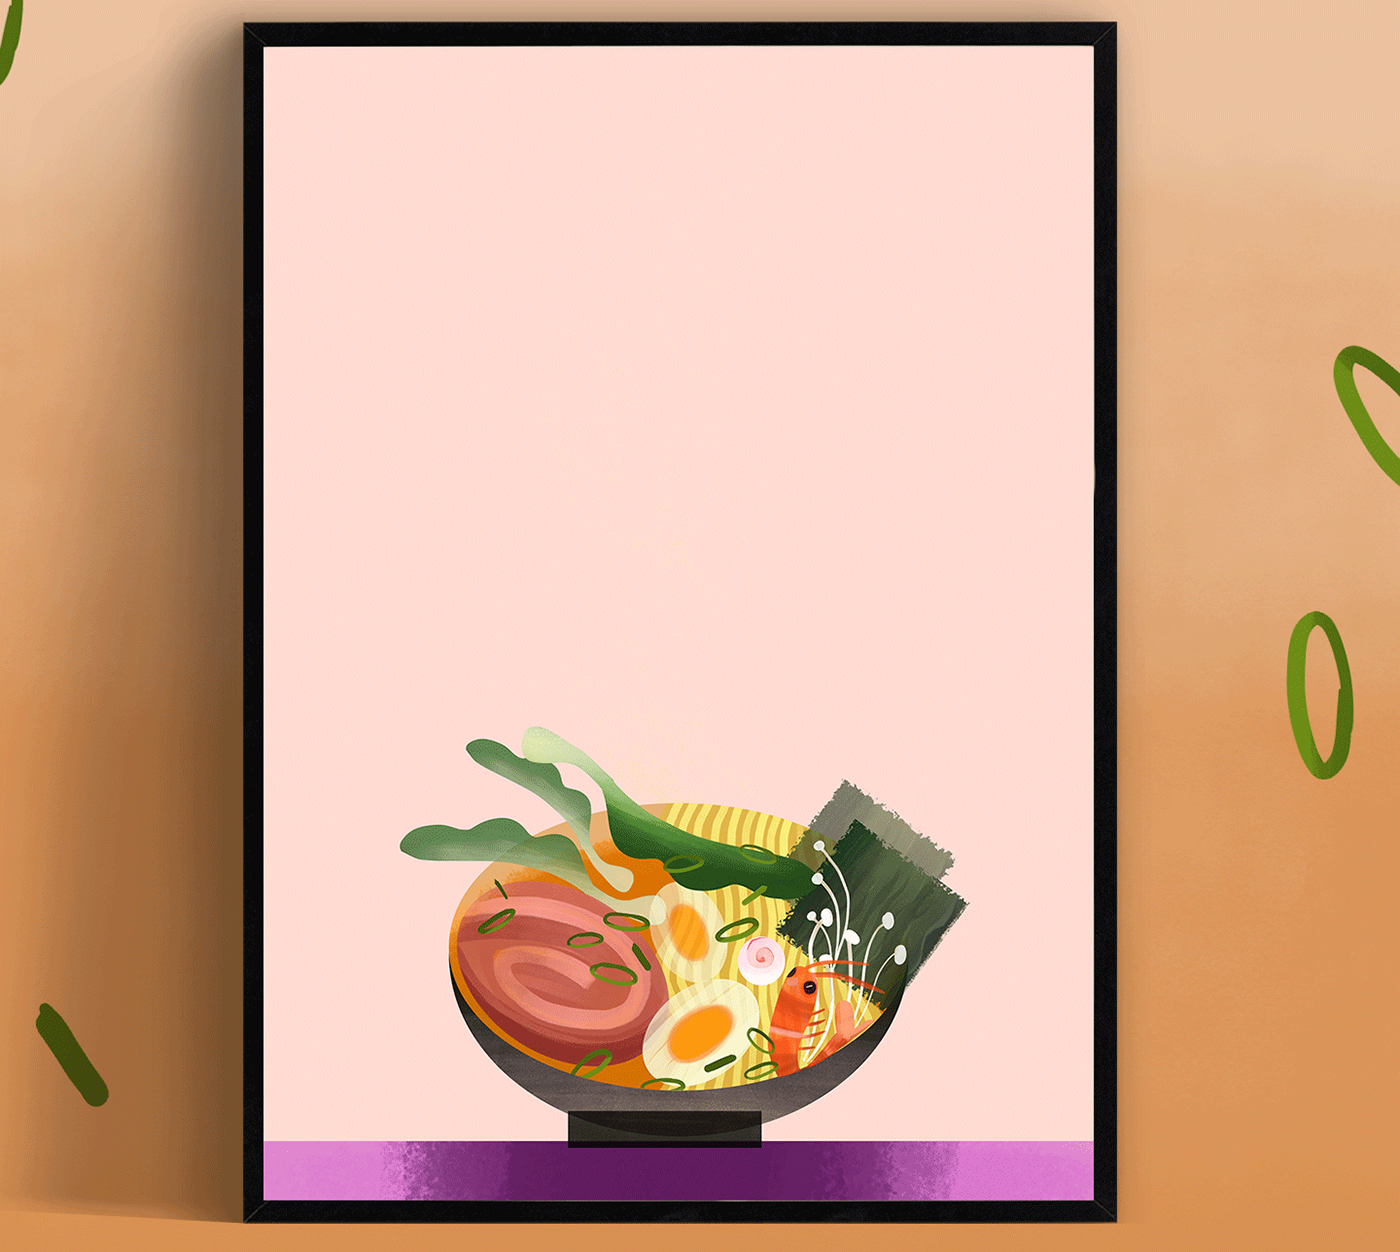 Advertising  cuisine Digital Art  digital illustration Drawing  Food  ILLUSTRATION  ramen vegetables visual identity